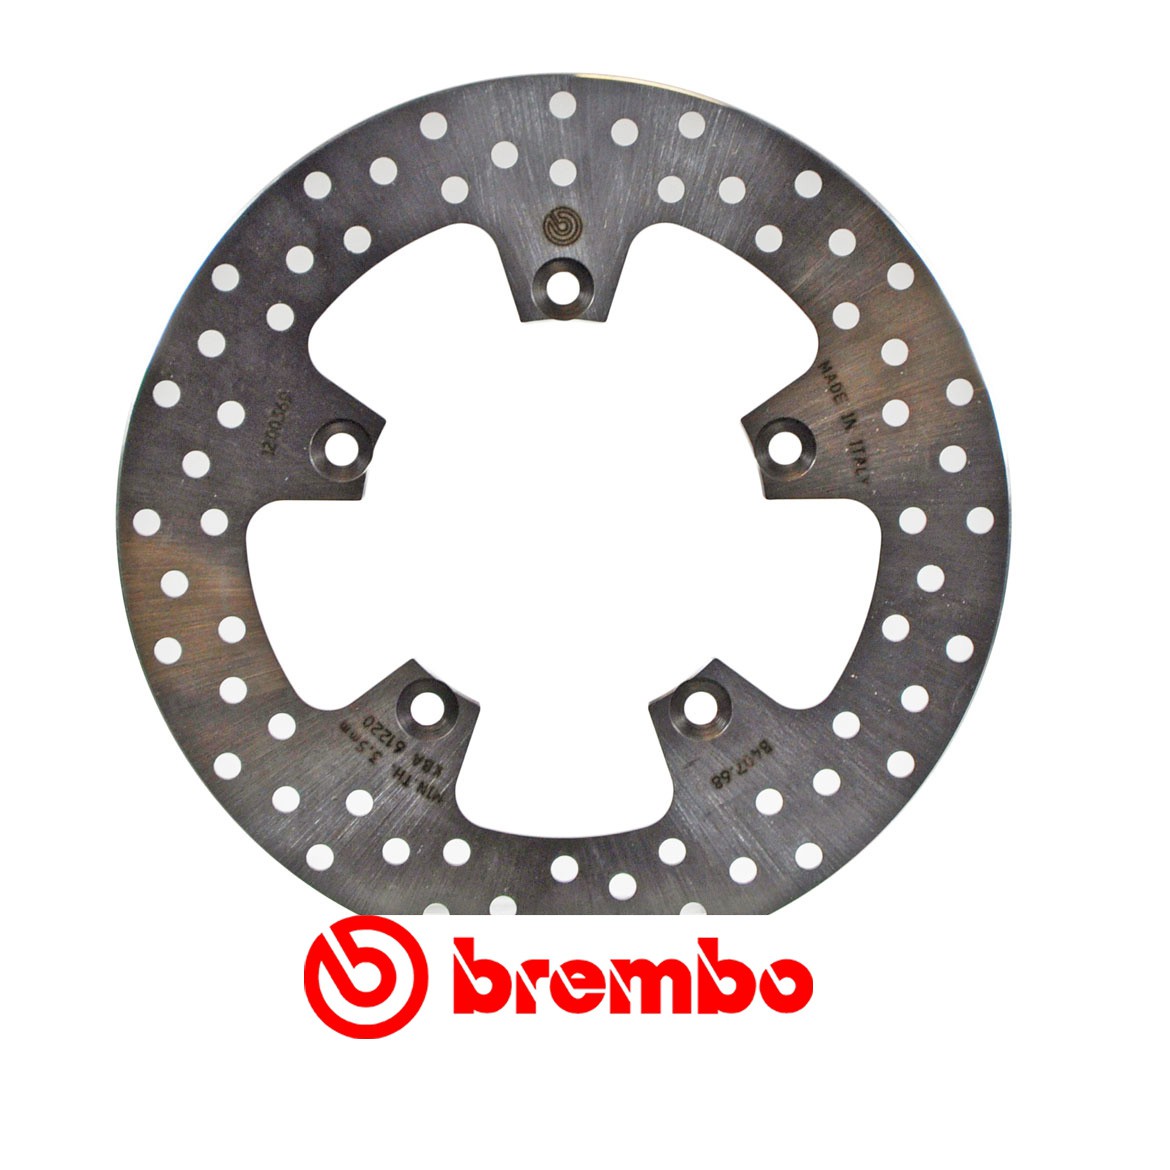 Disque de frein arrière Brembo pour Ducati 999 R, S (02-07)